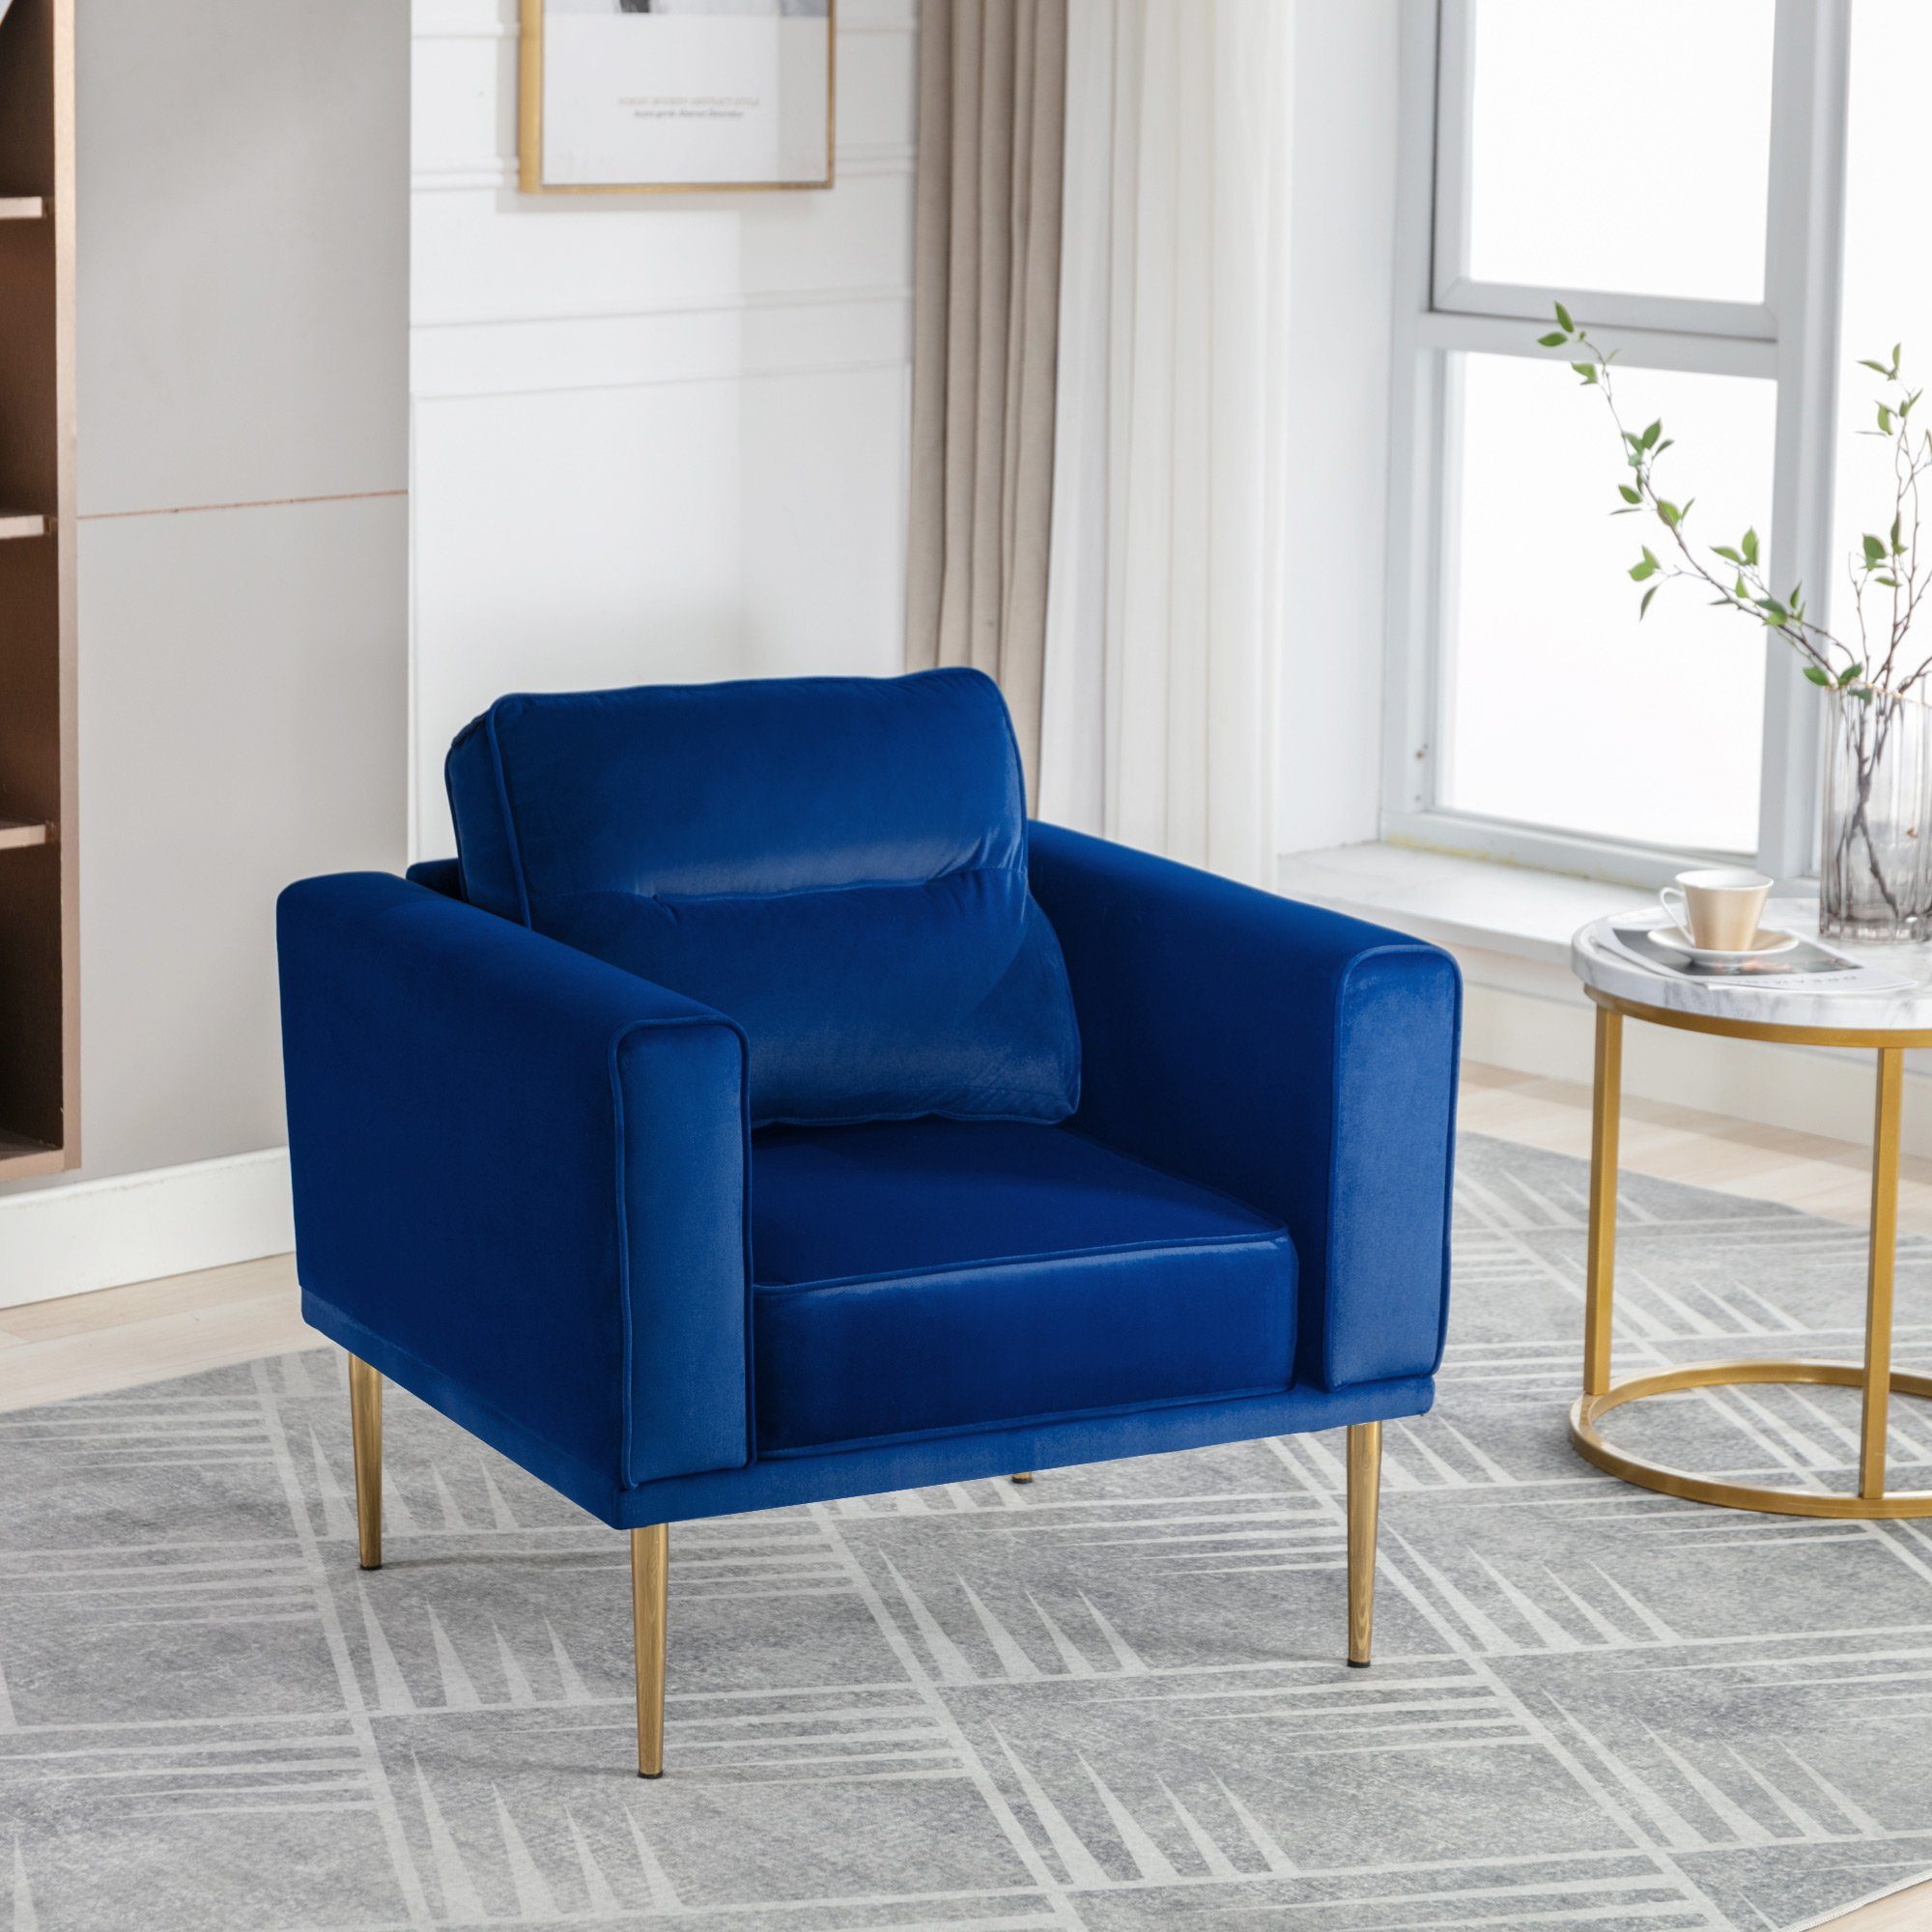 OKWISH Sessel Fernsehsessel, Loungesessel, Sessel mit Polster und Sitzkissen (lässiger Sessel), Roségold-Metallbeine, moderner einfacher Samtstuhl blau